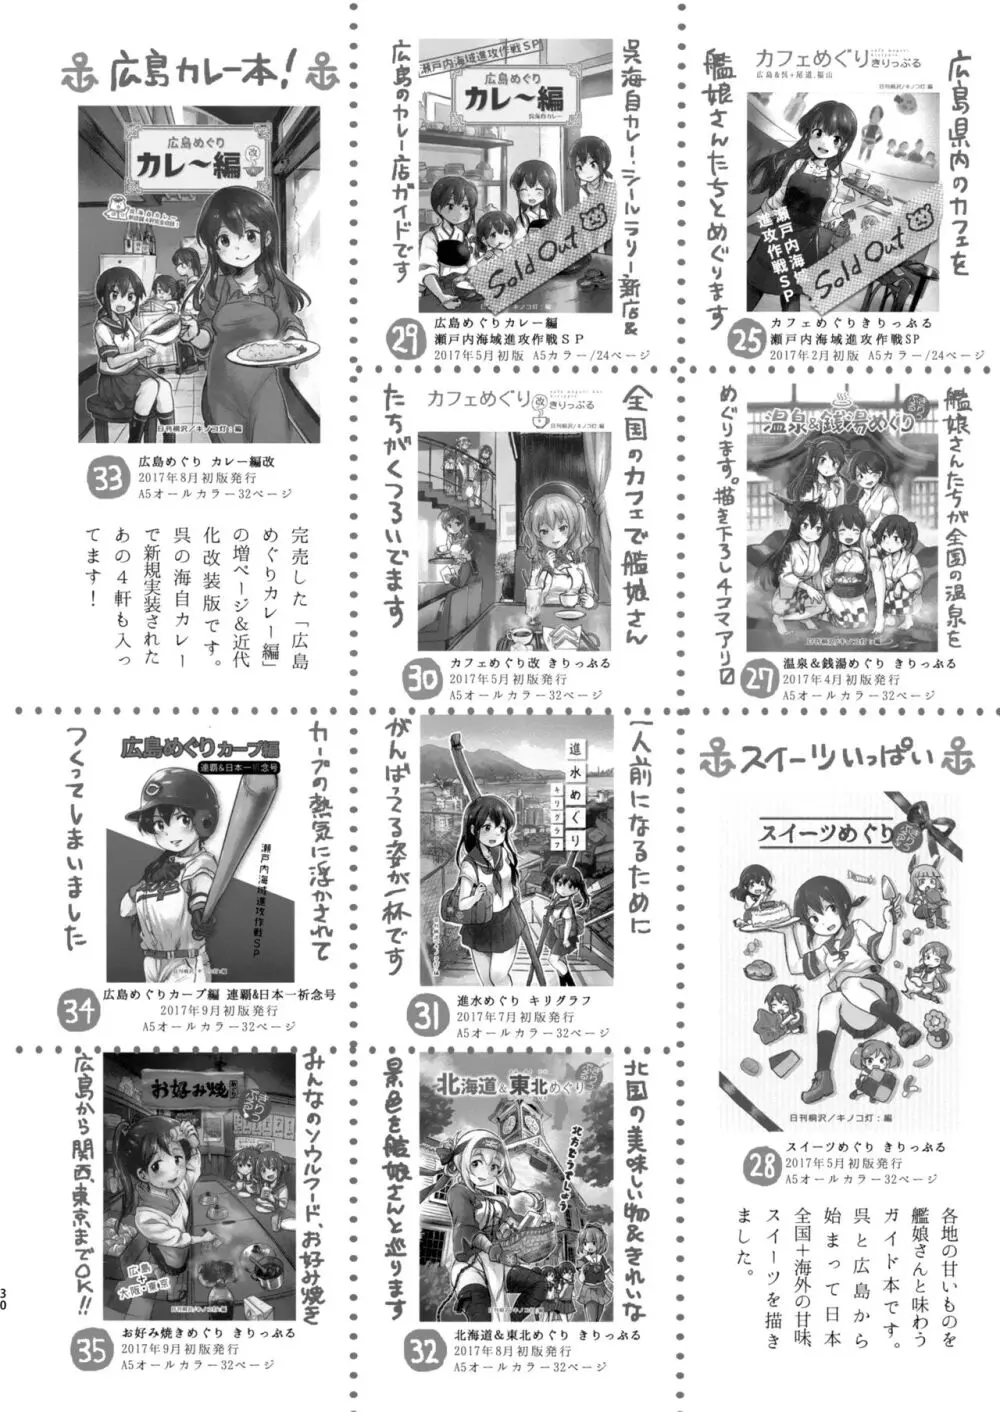 迅鯨ちゃんと 蜜月温泉 旅の宿 - page29